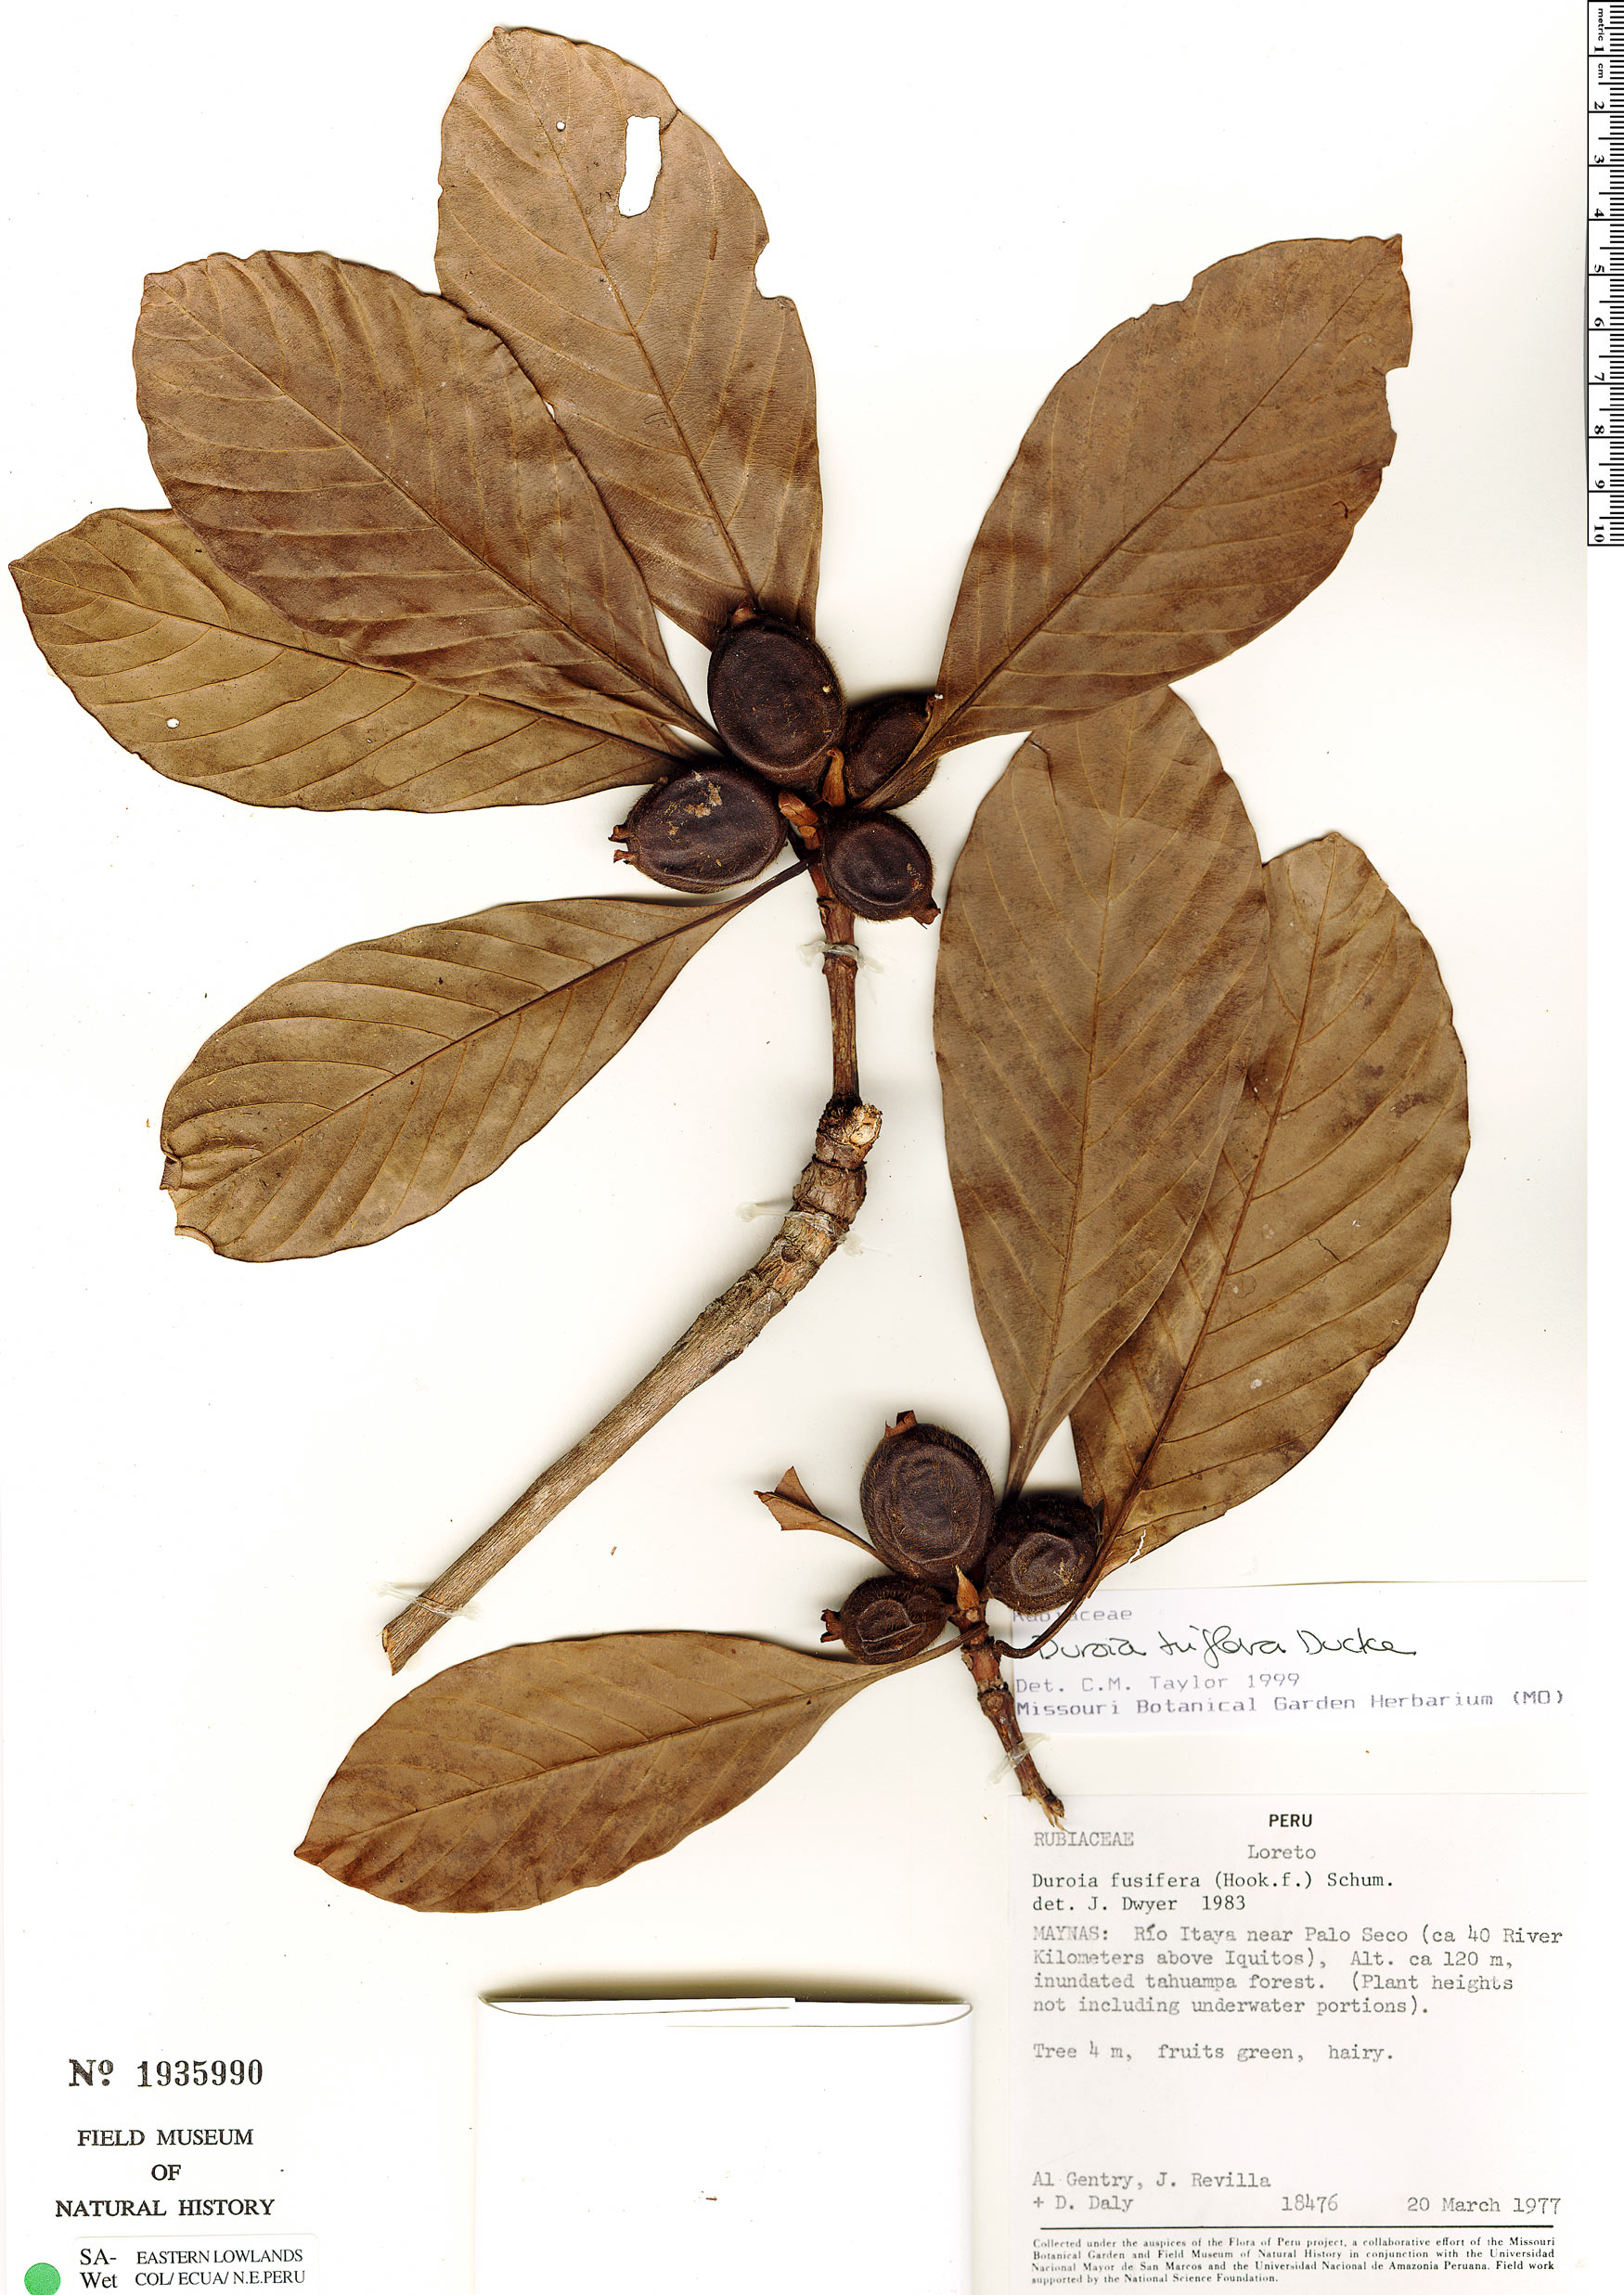 Duroia triflora image